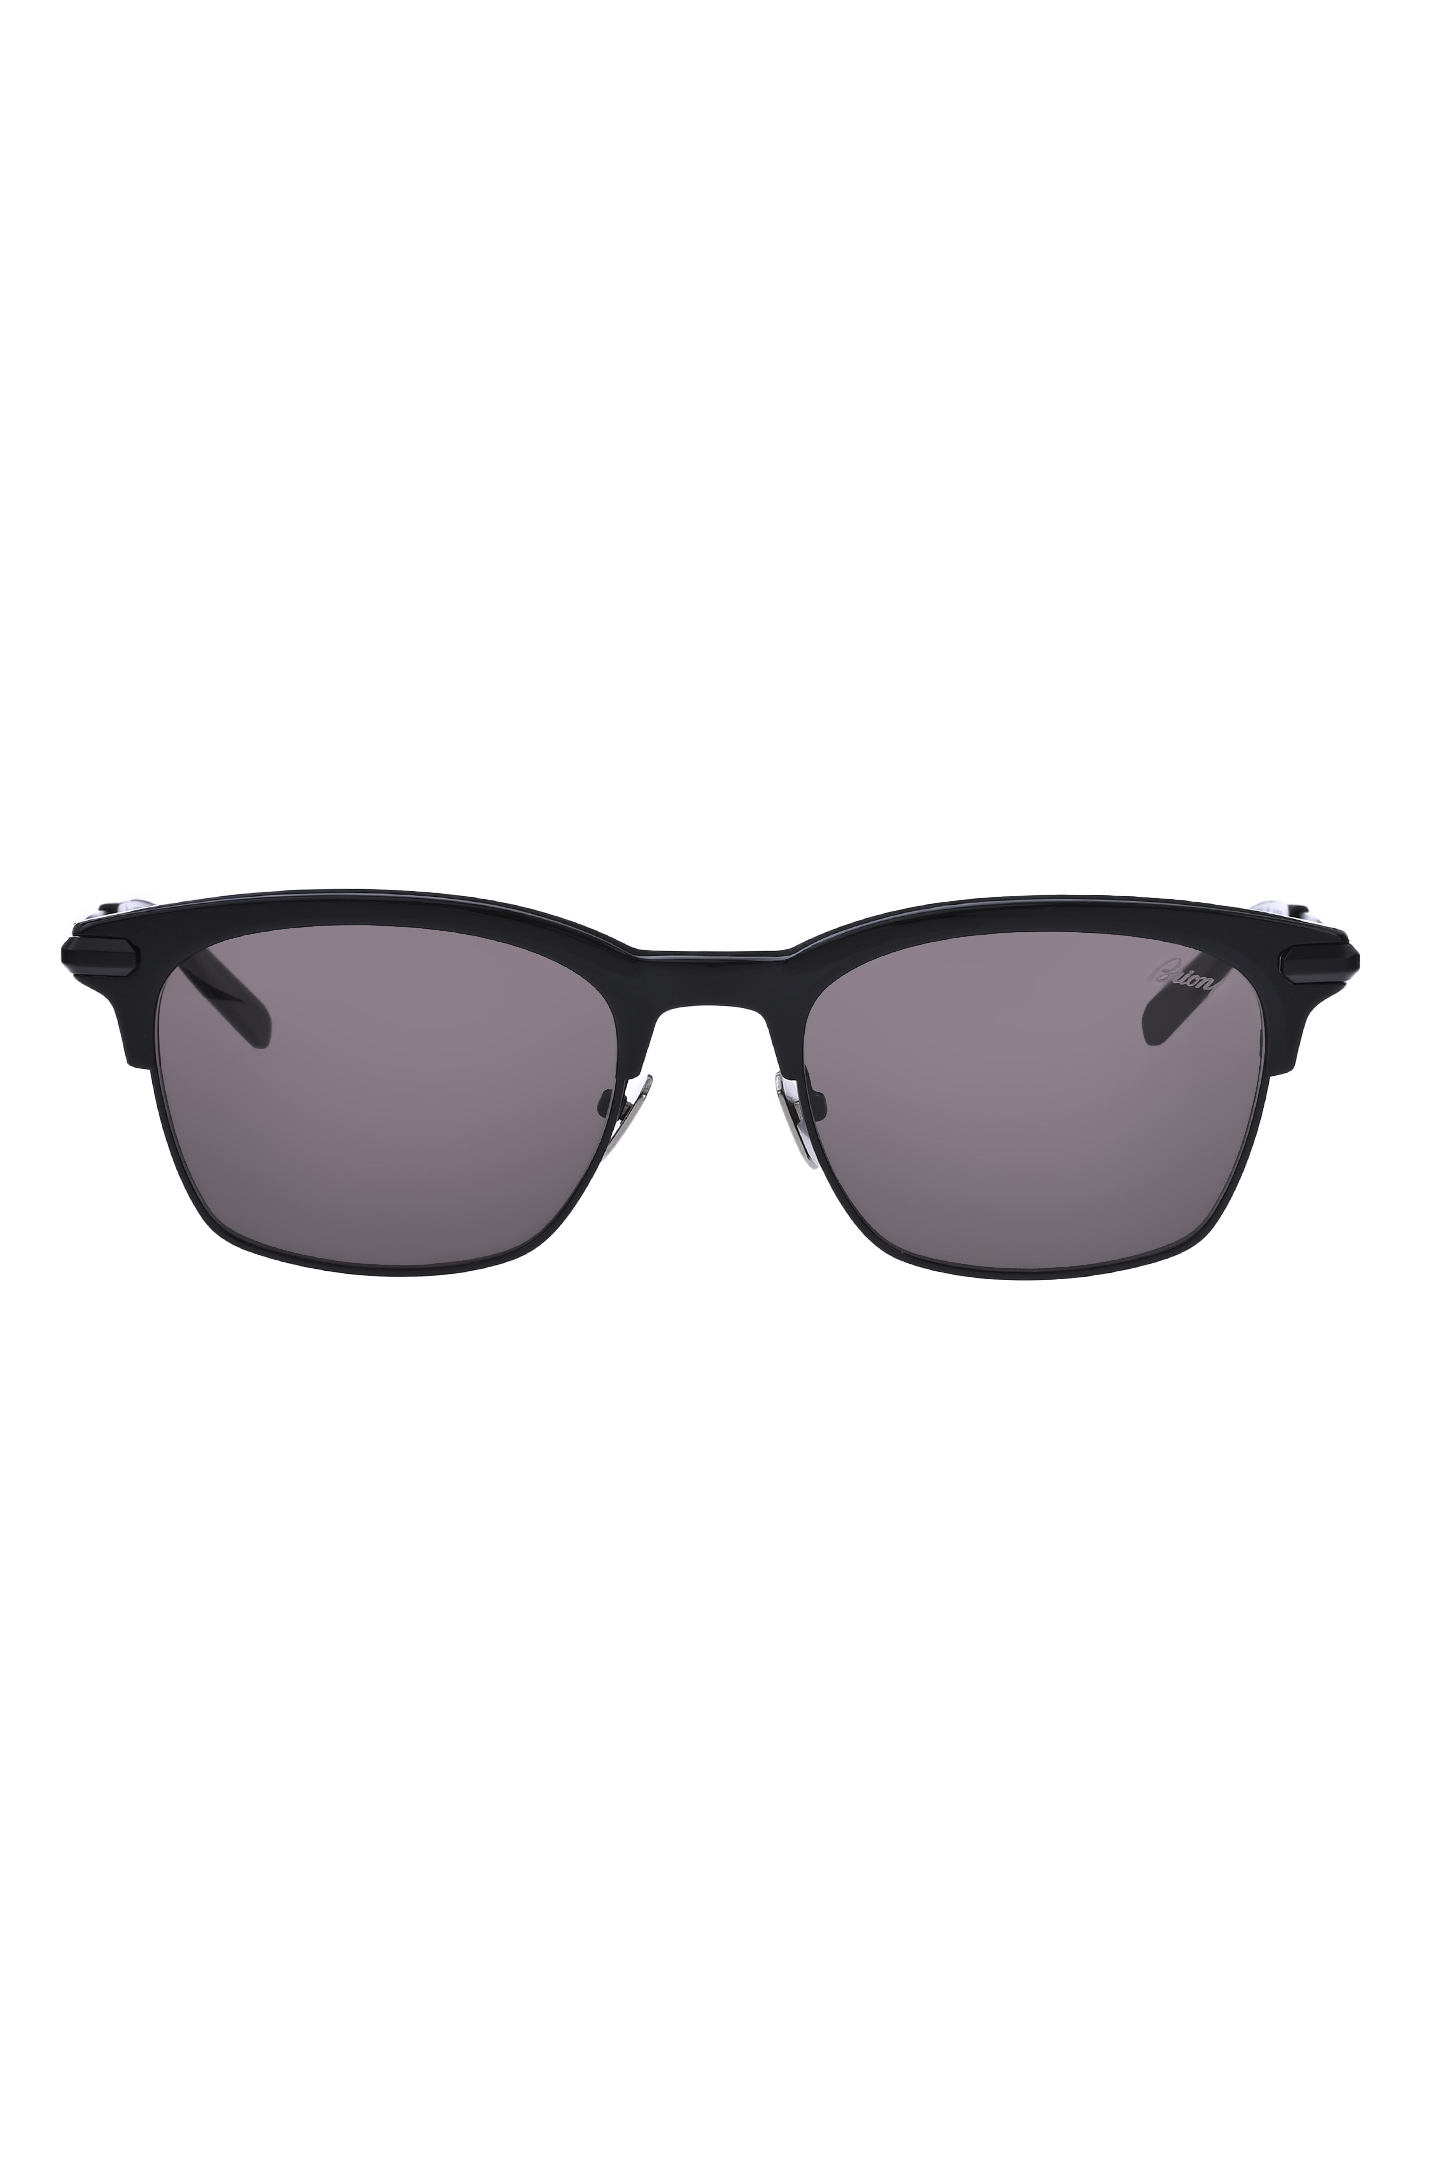 Солнцезащитные очки BRIONI ODE600 P3ZAC, цвет: Черный, Мужской